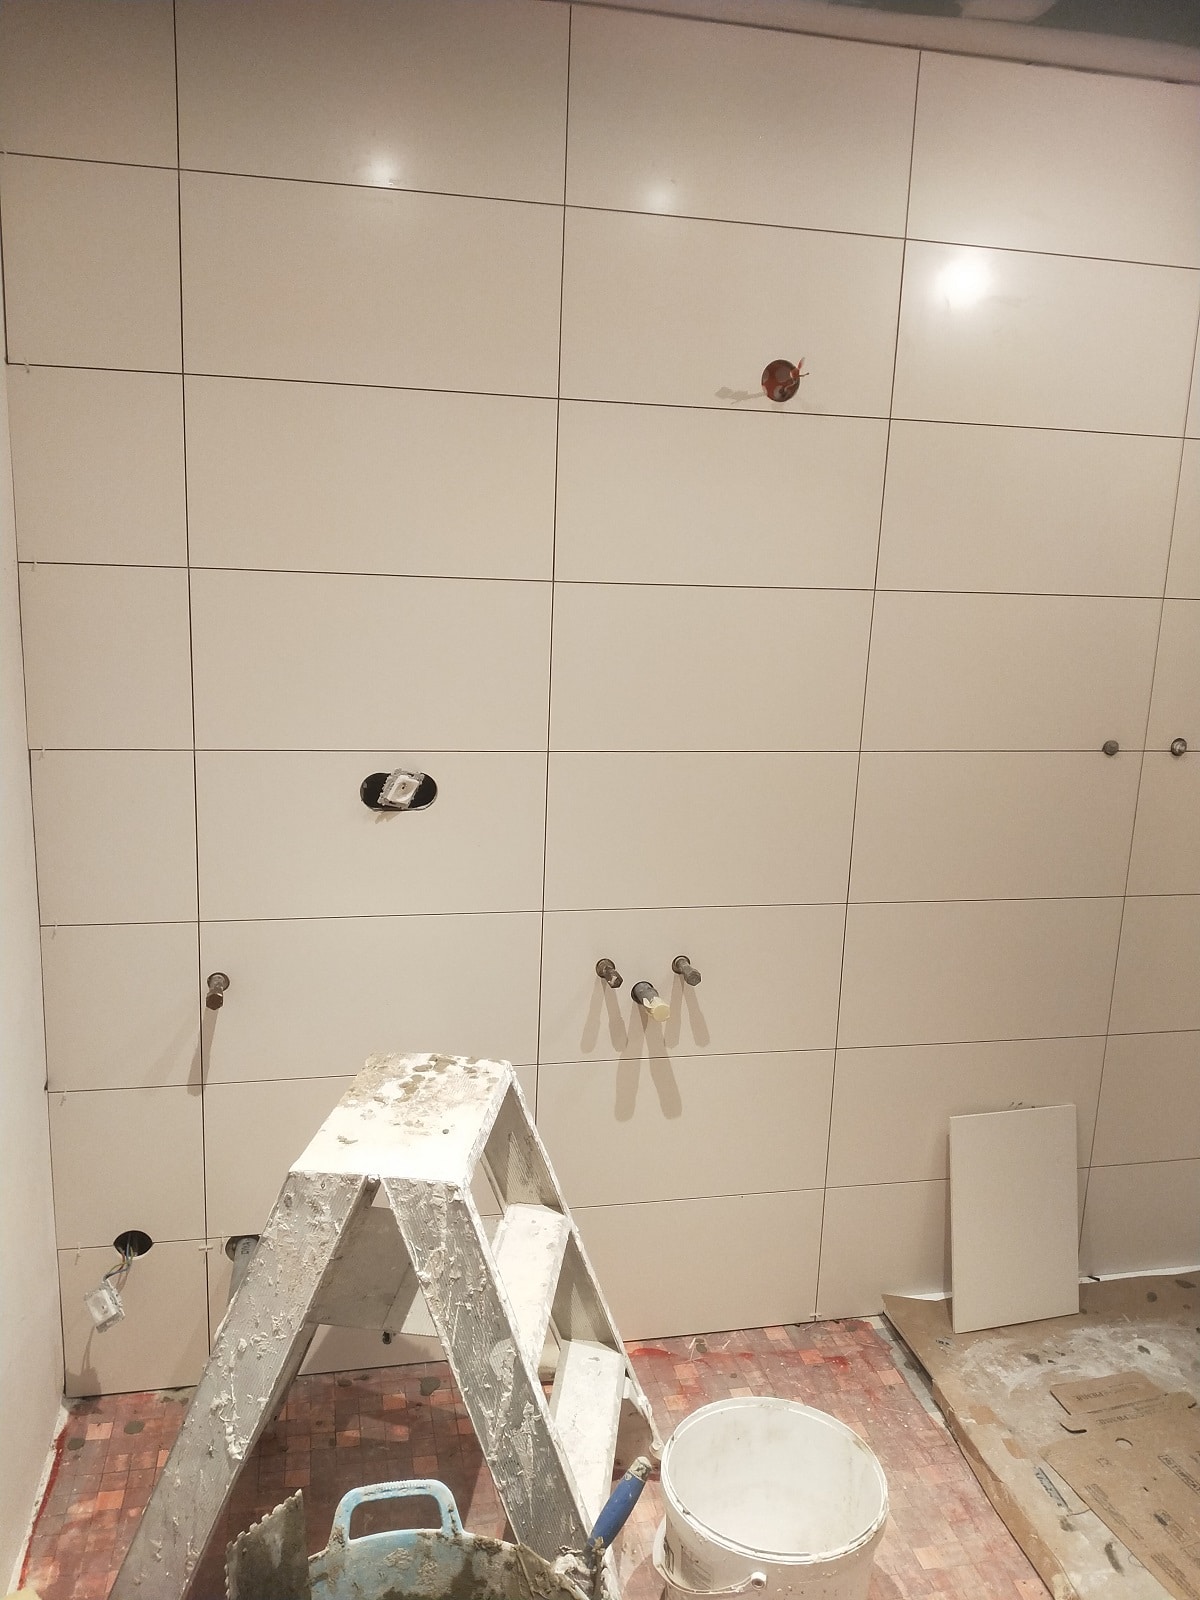 salle de bains en cours de renovation